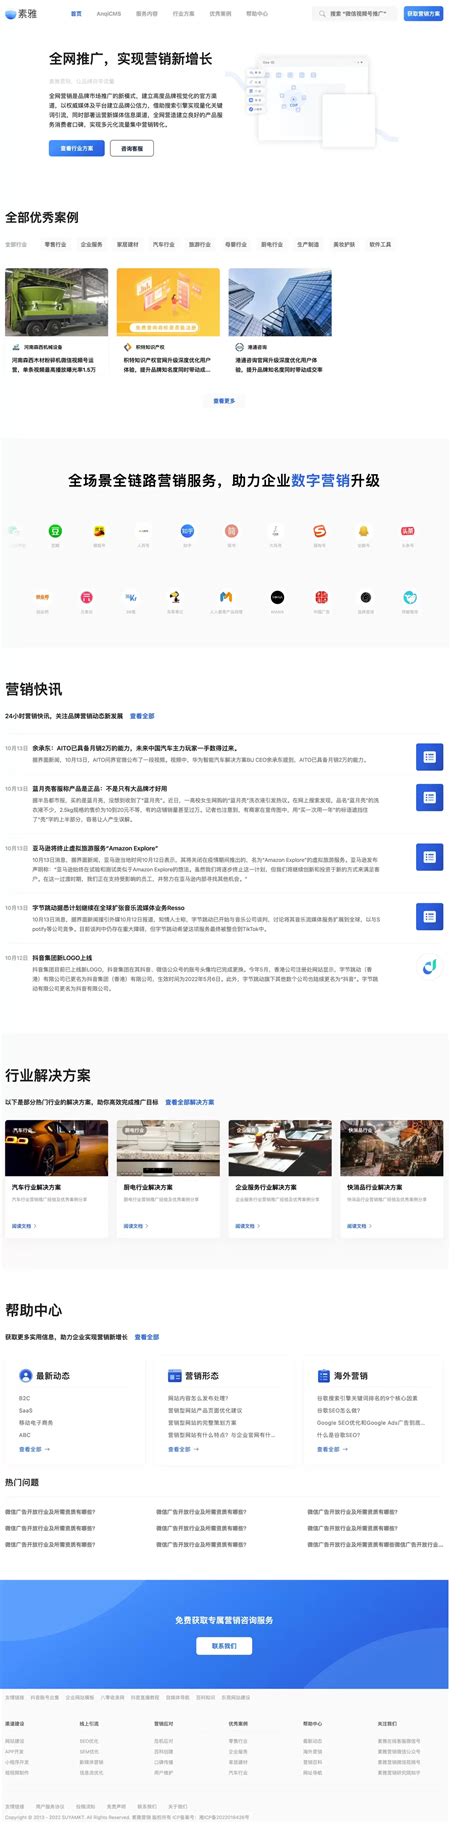 武汉网页制作公司